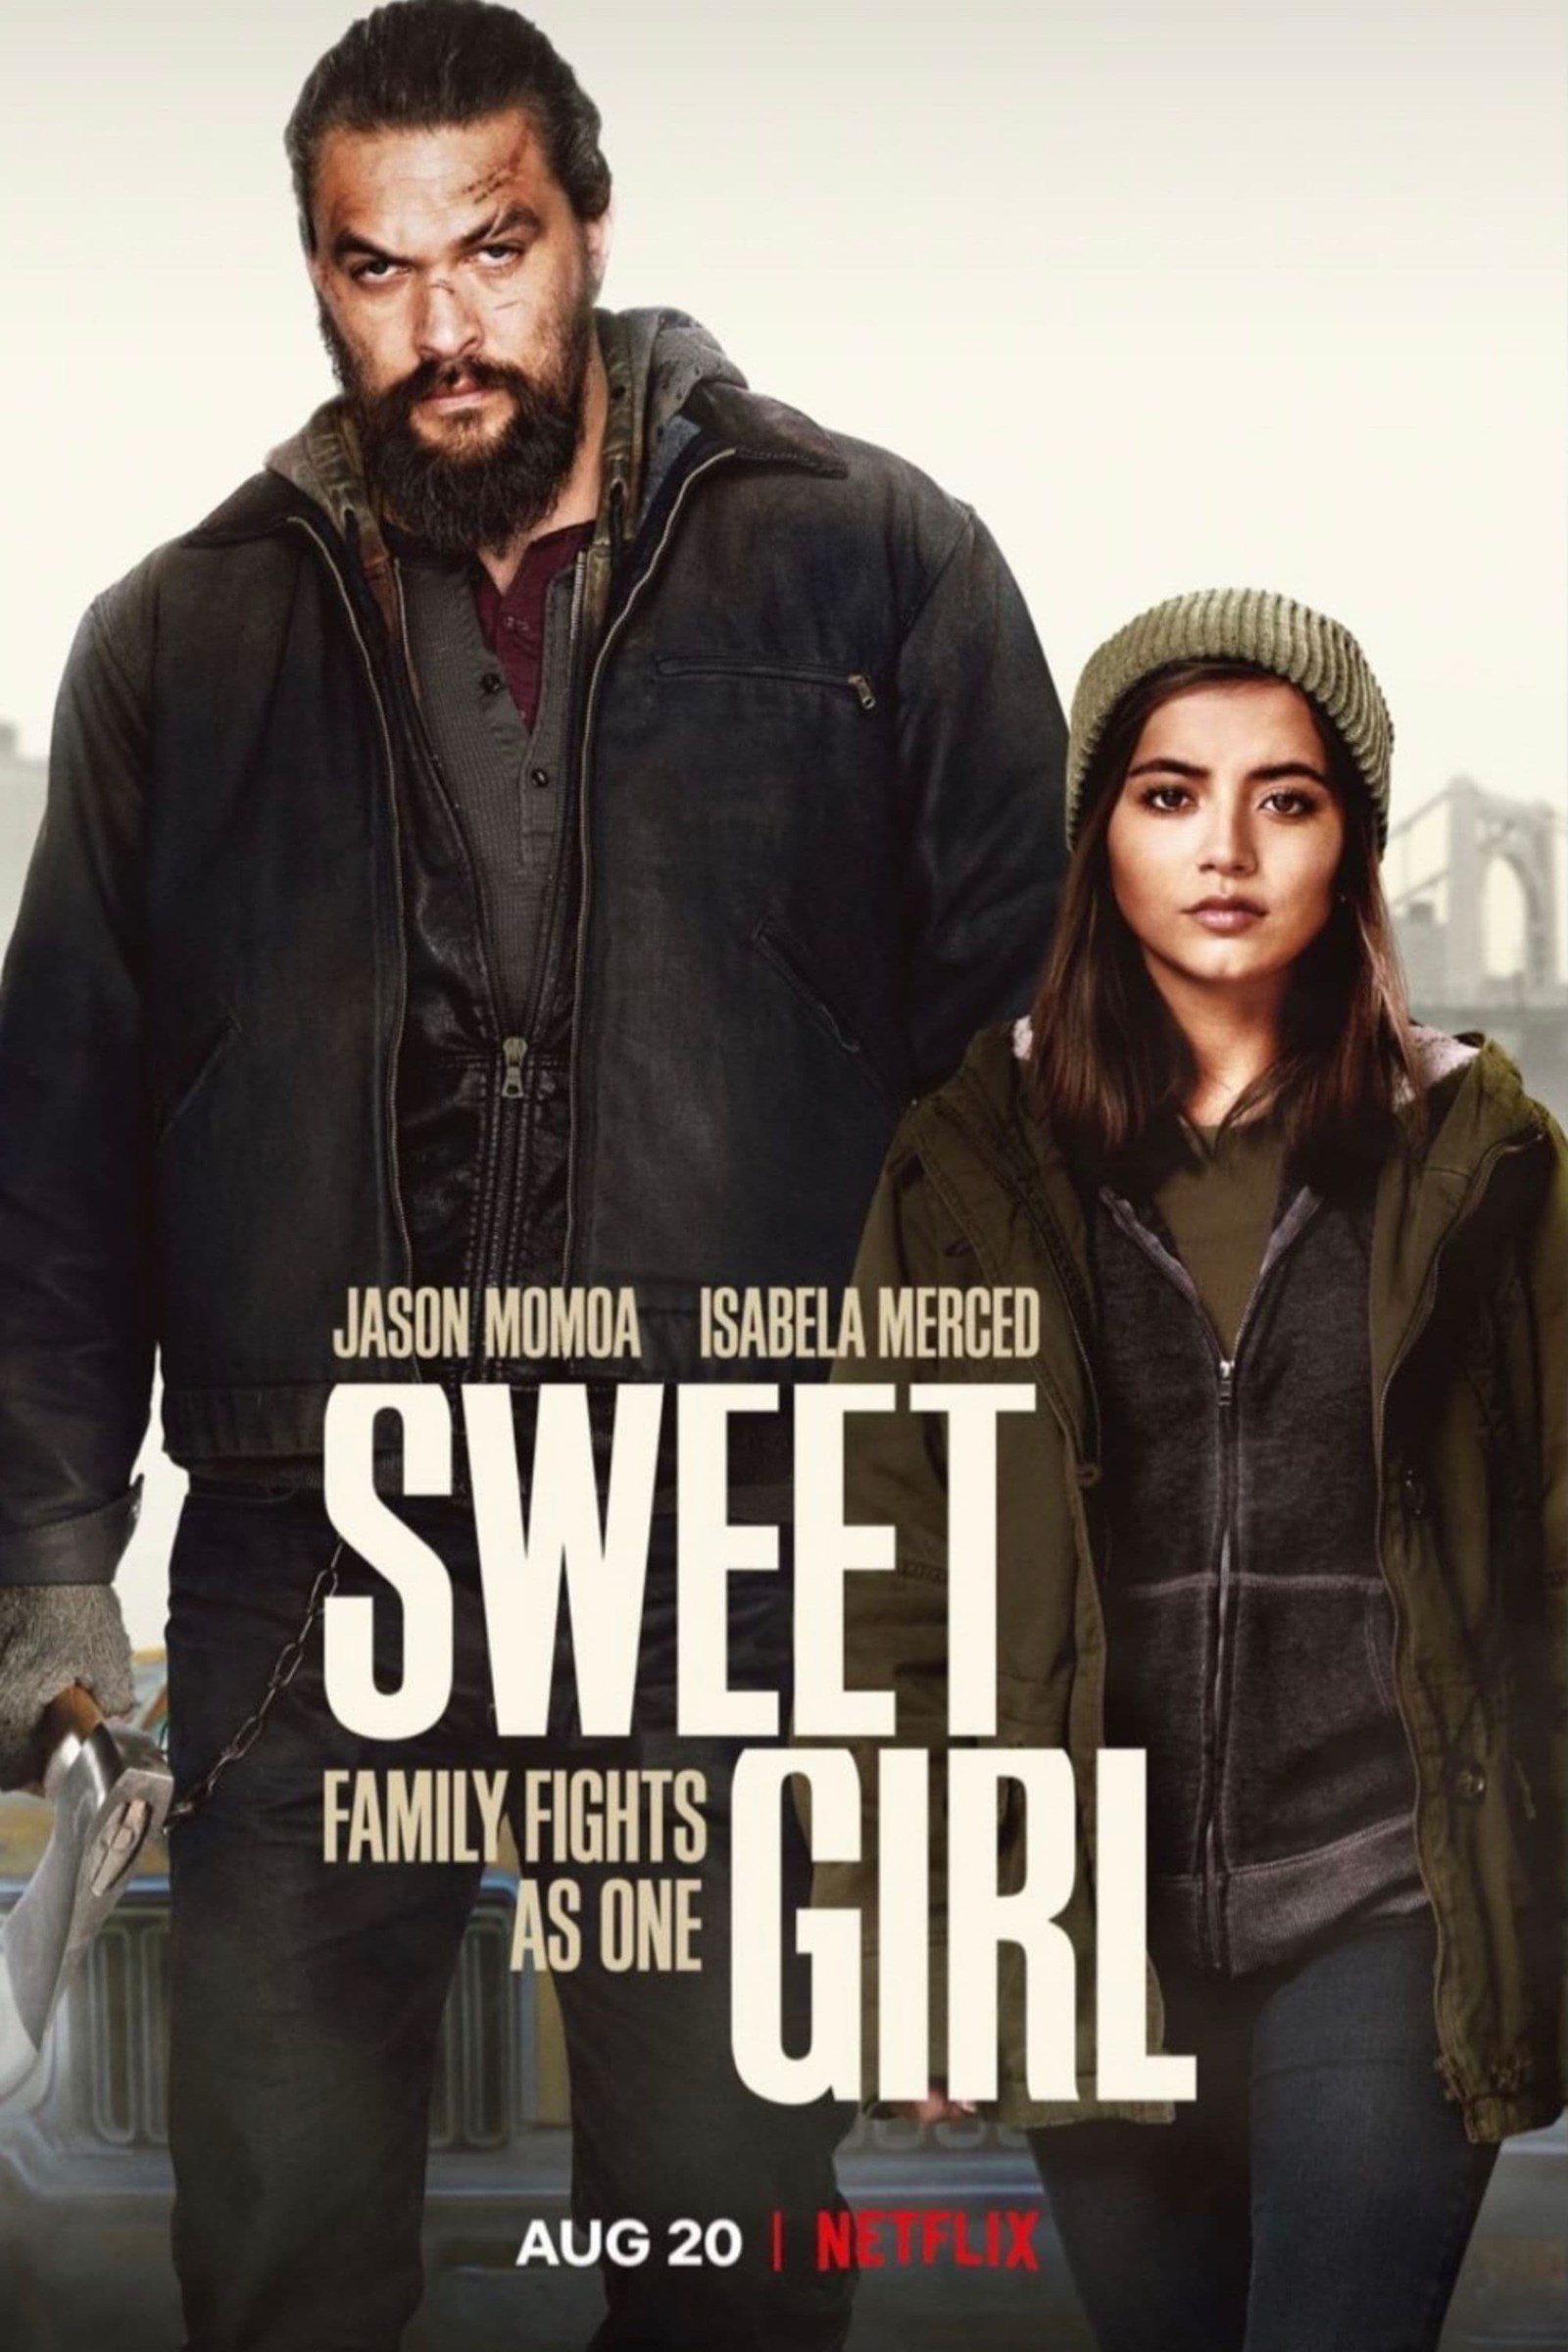 Sweet girl (2021)